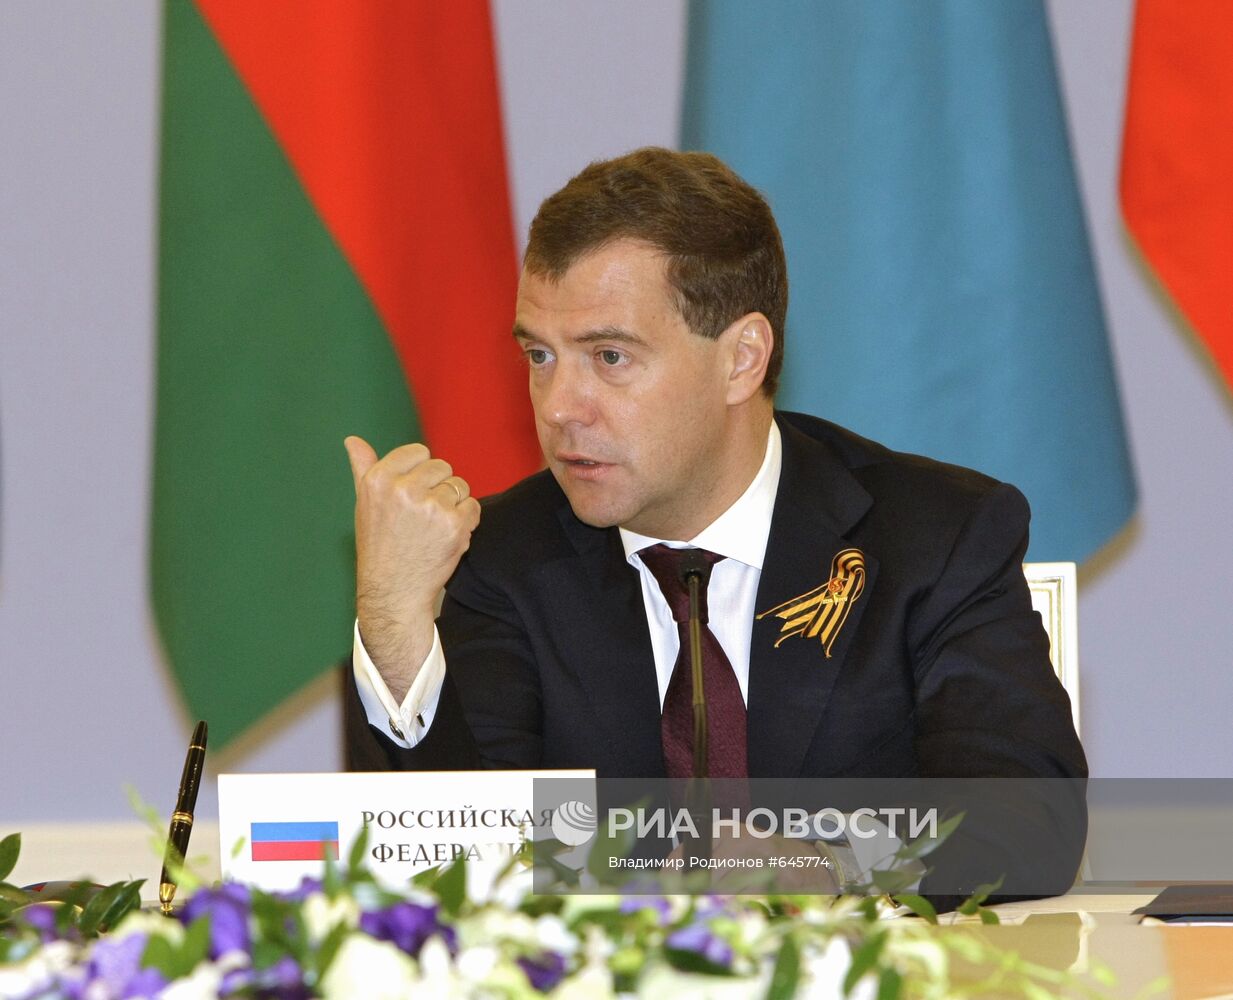 Д.Медведев на неформальной встрече глав государств ОДКБ